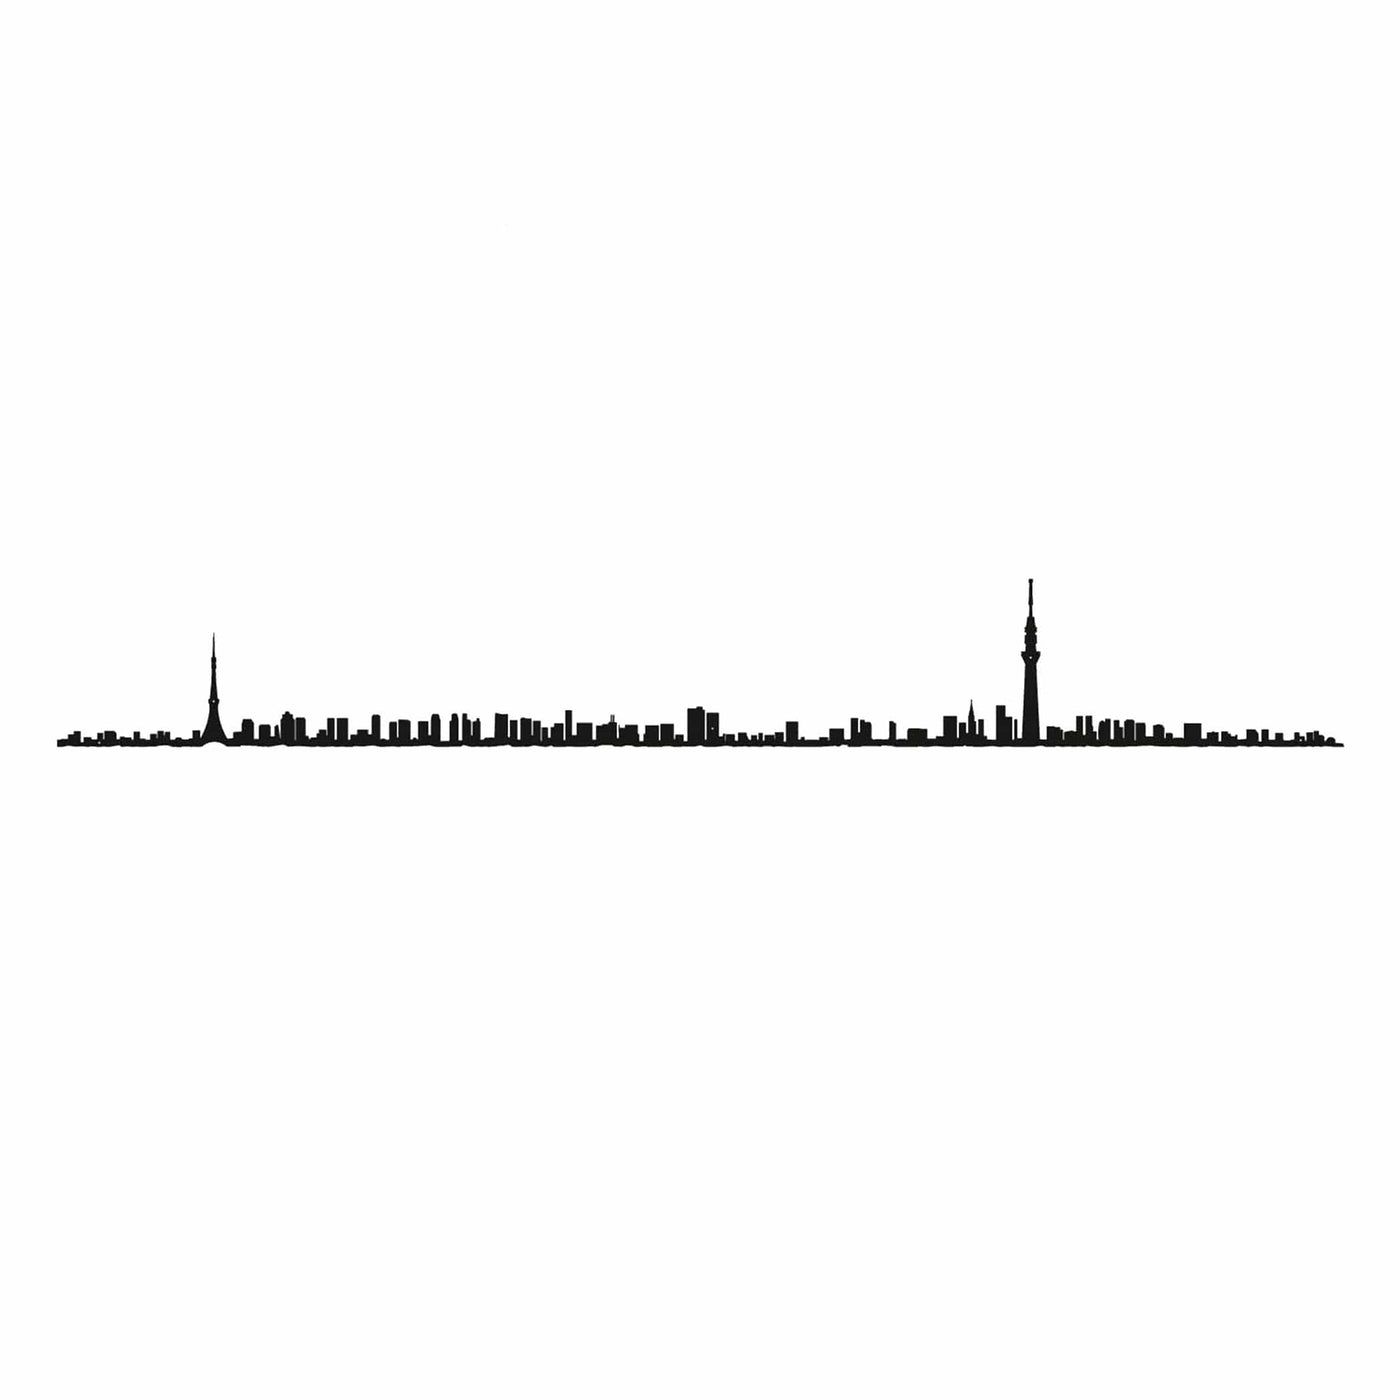 La silhouette de Tokyo par The Line en 50 cm capture l'essence dynamique de la capitale japonaise.